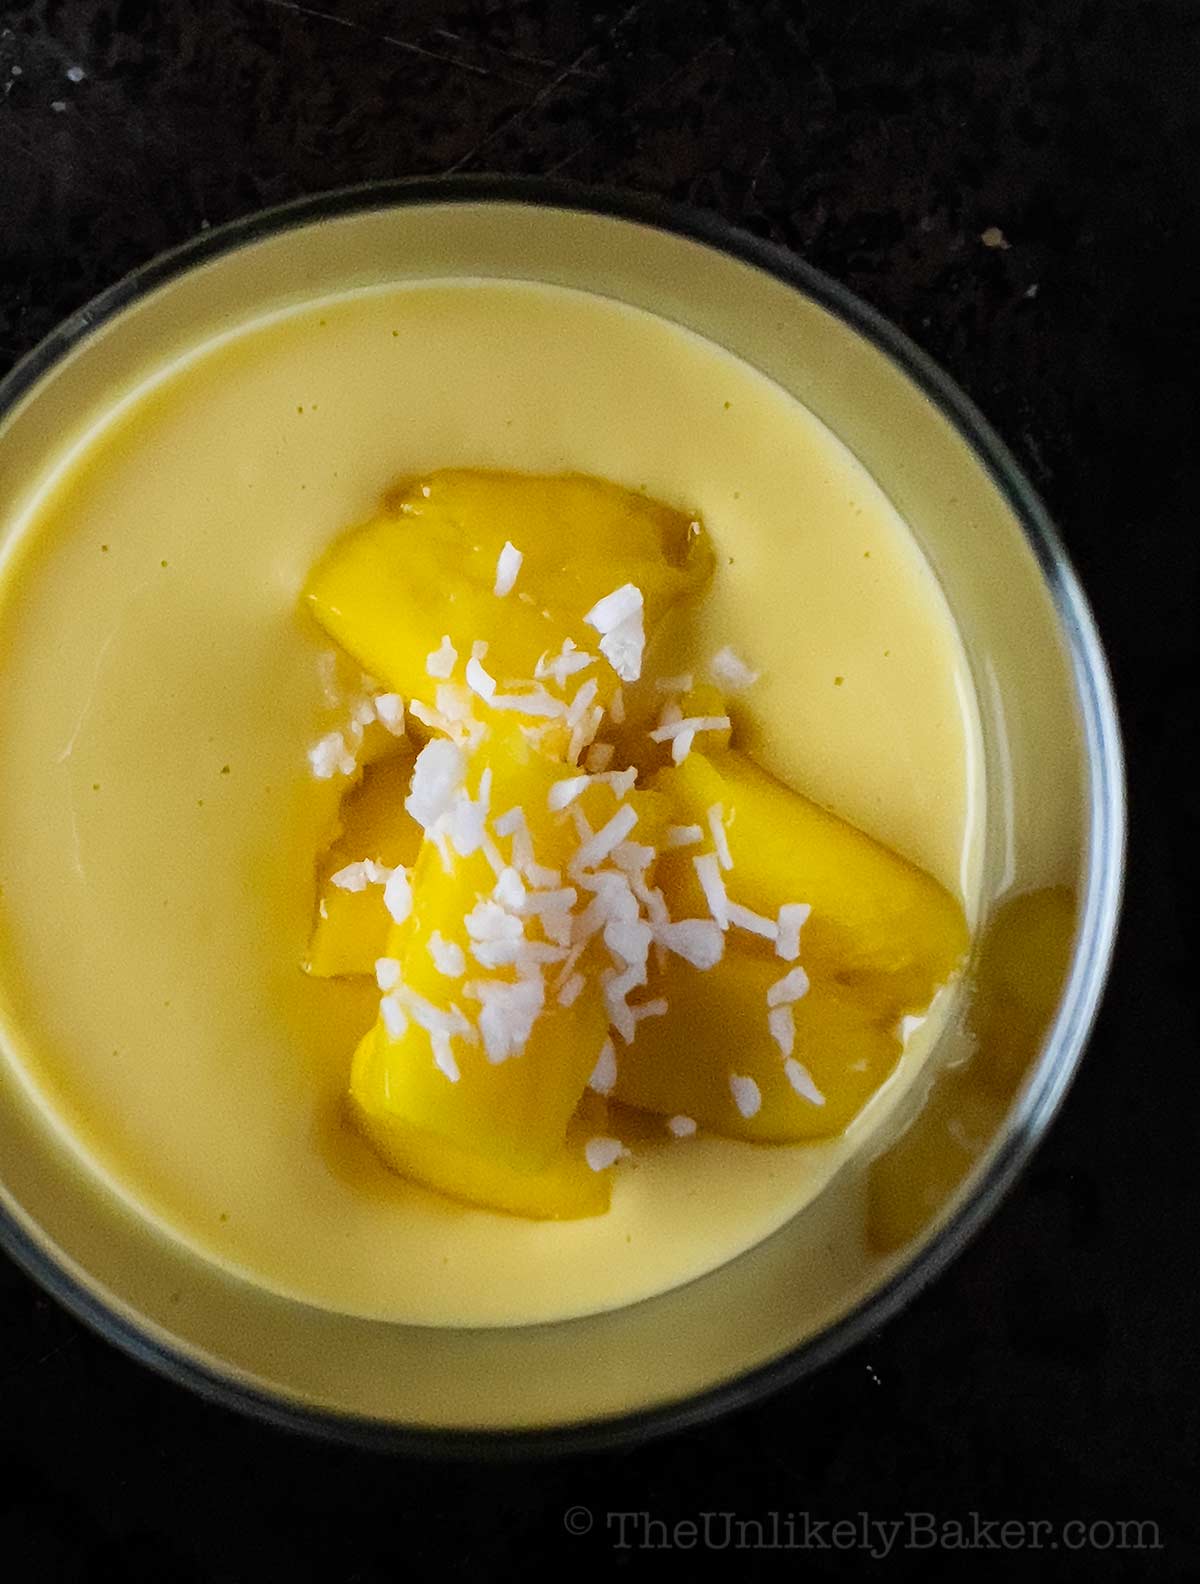 Mango chunks on mango pudding.